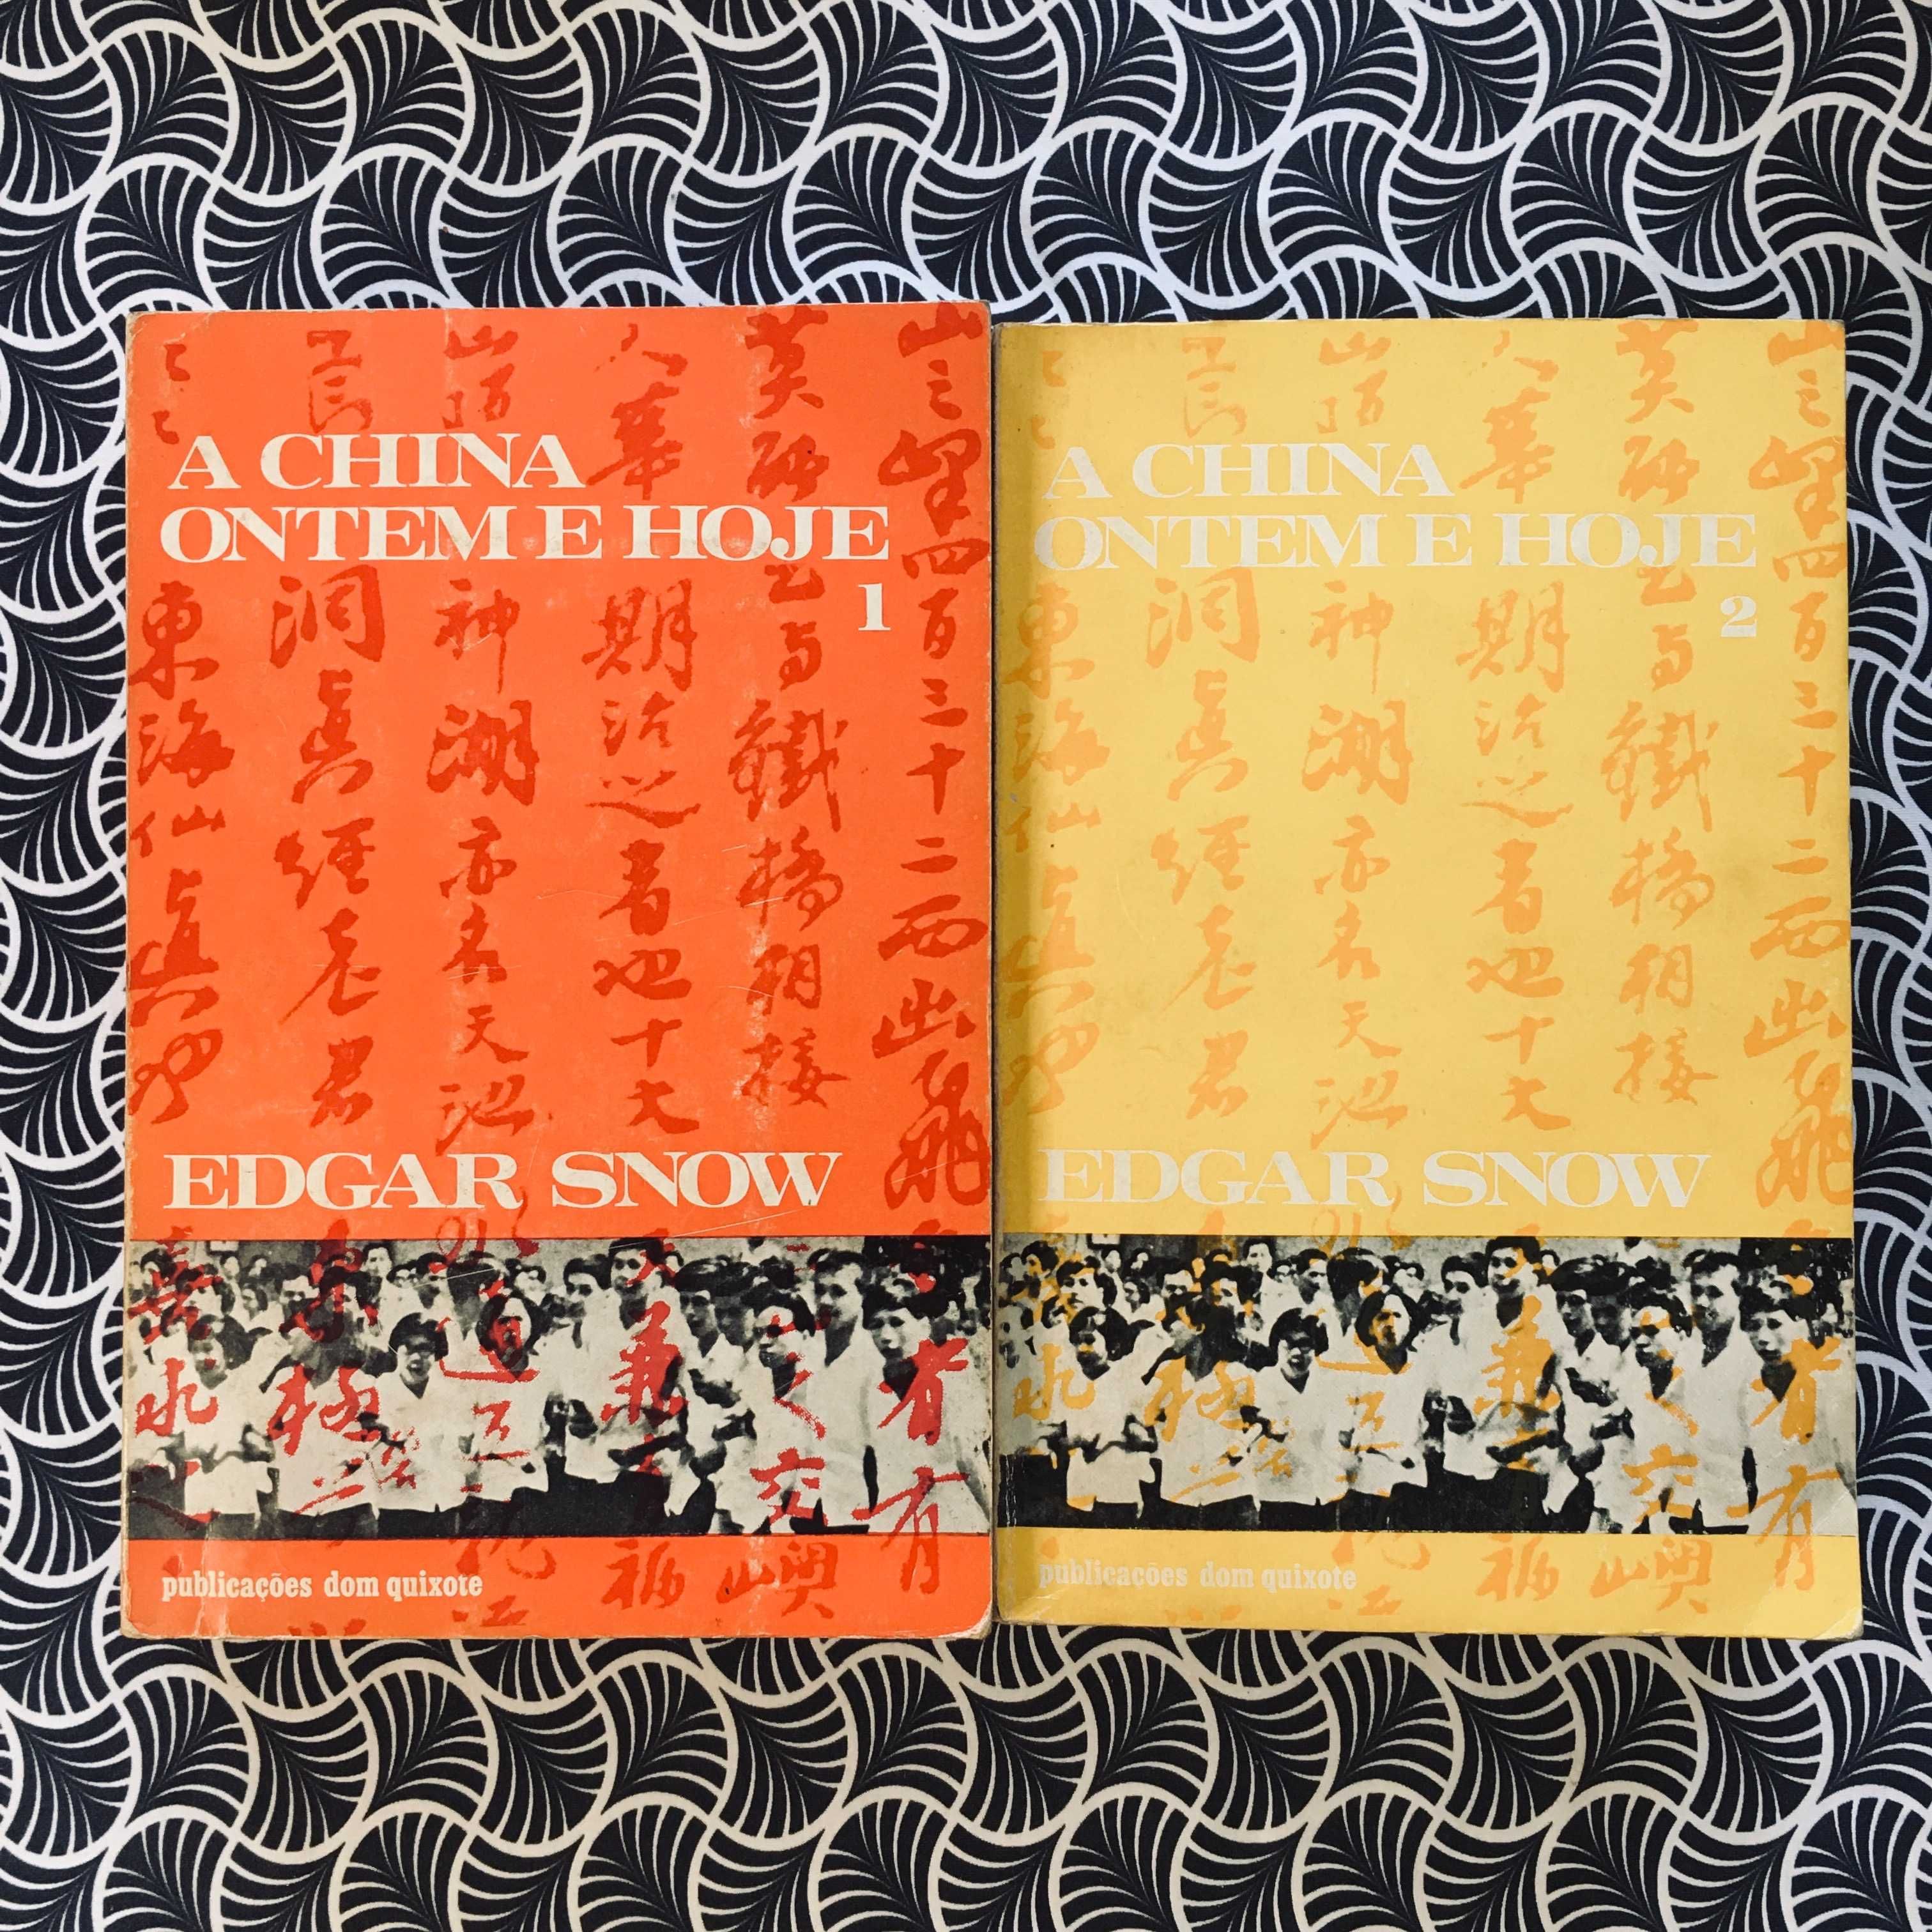 A China Ontem e Hoje (2 volumes) - Edgar Snow